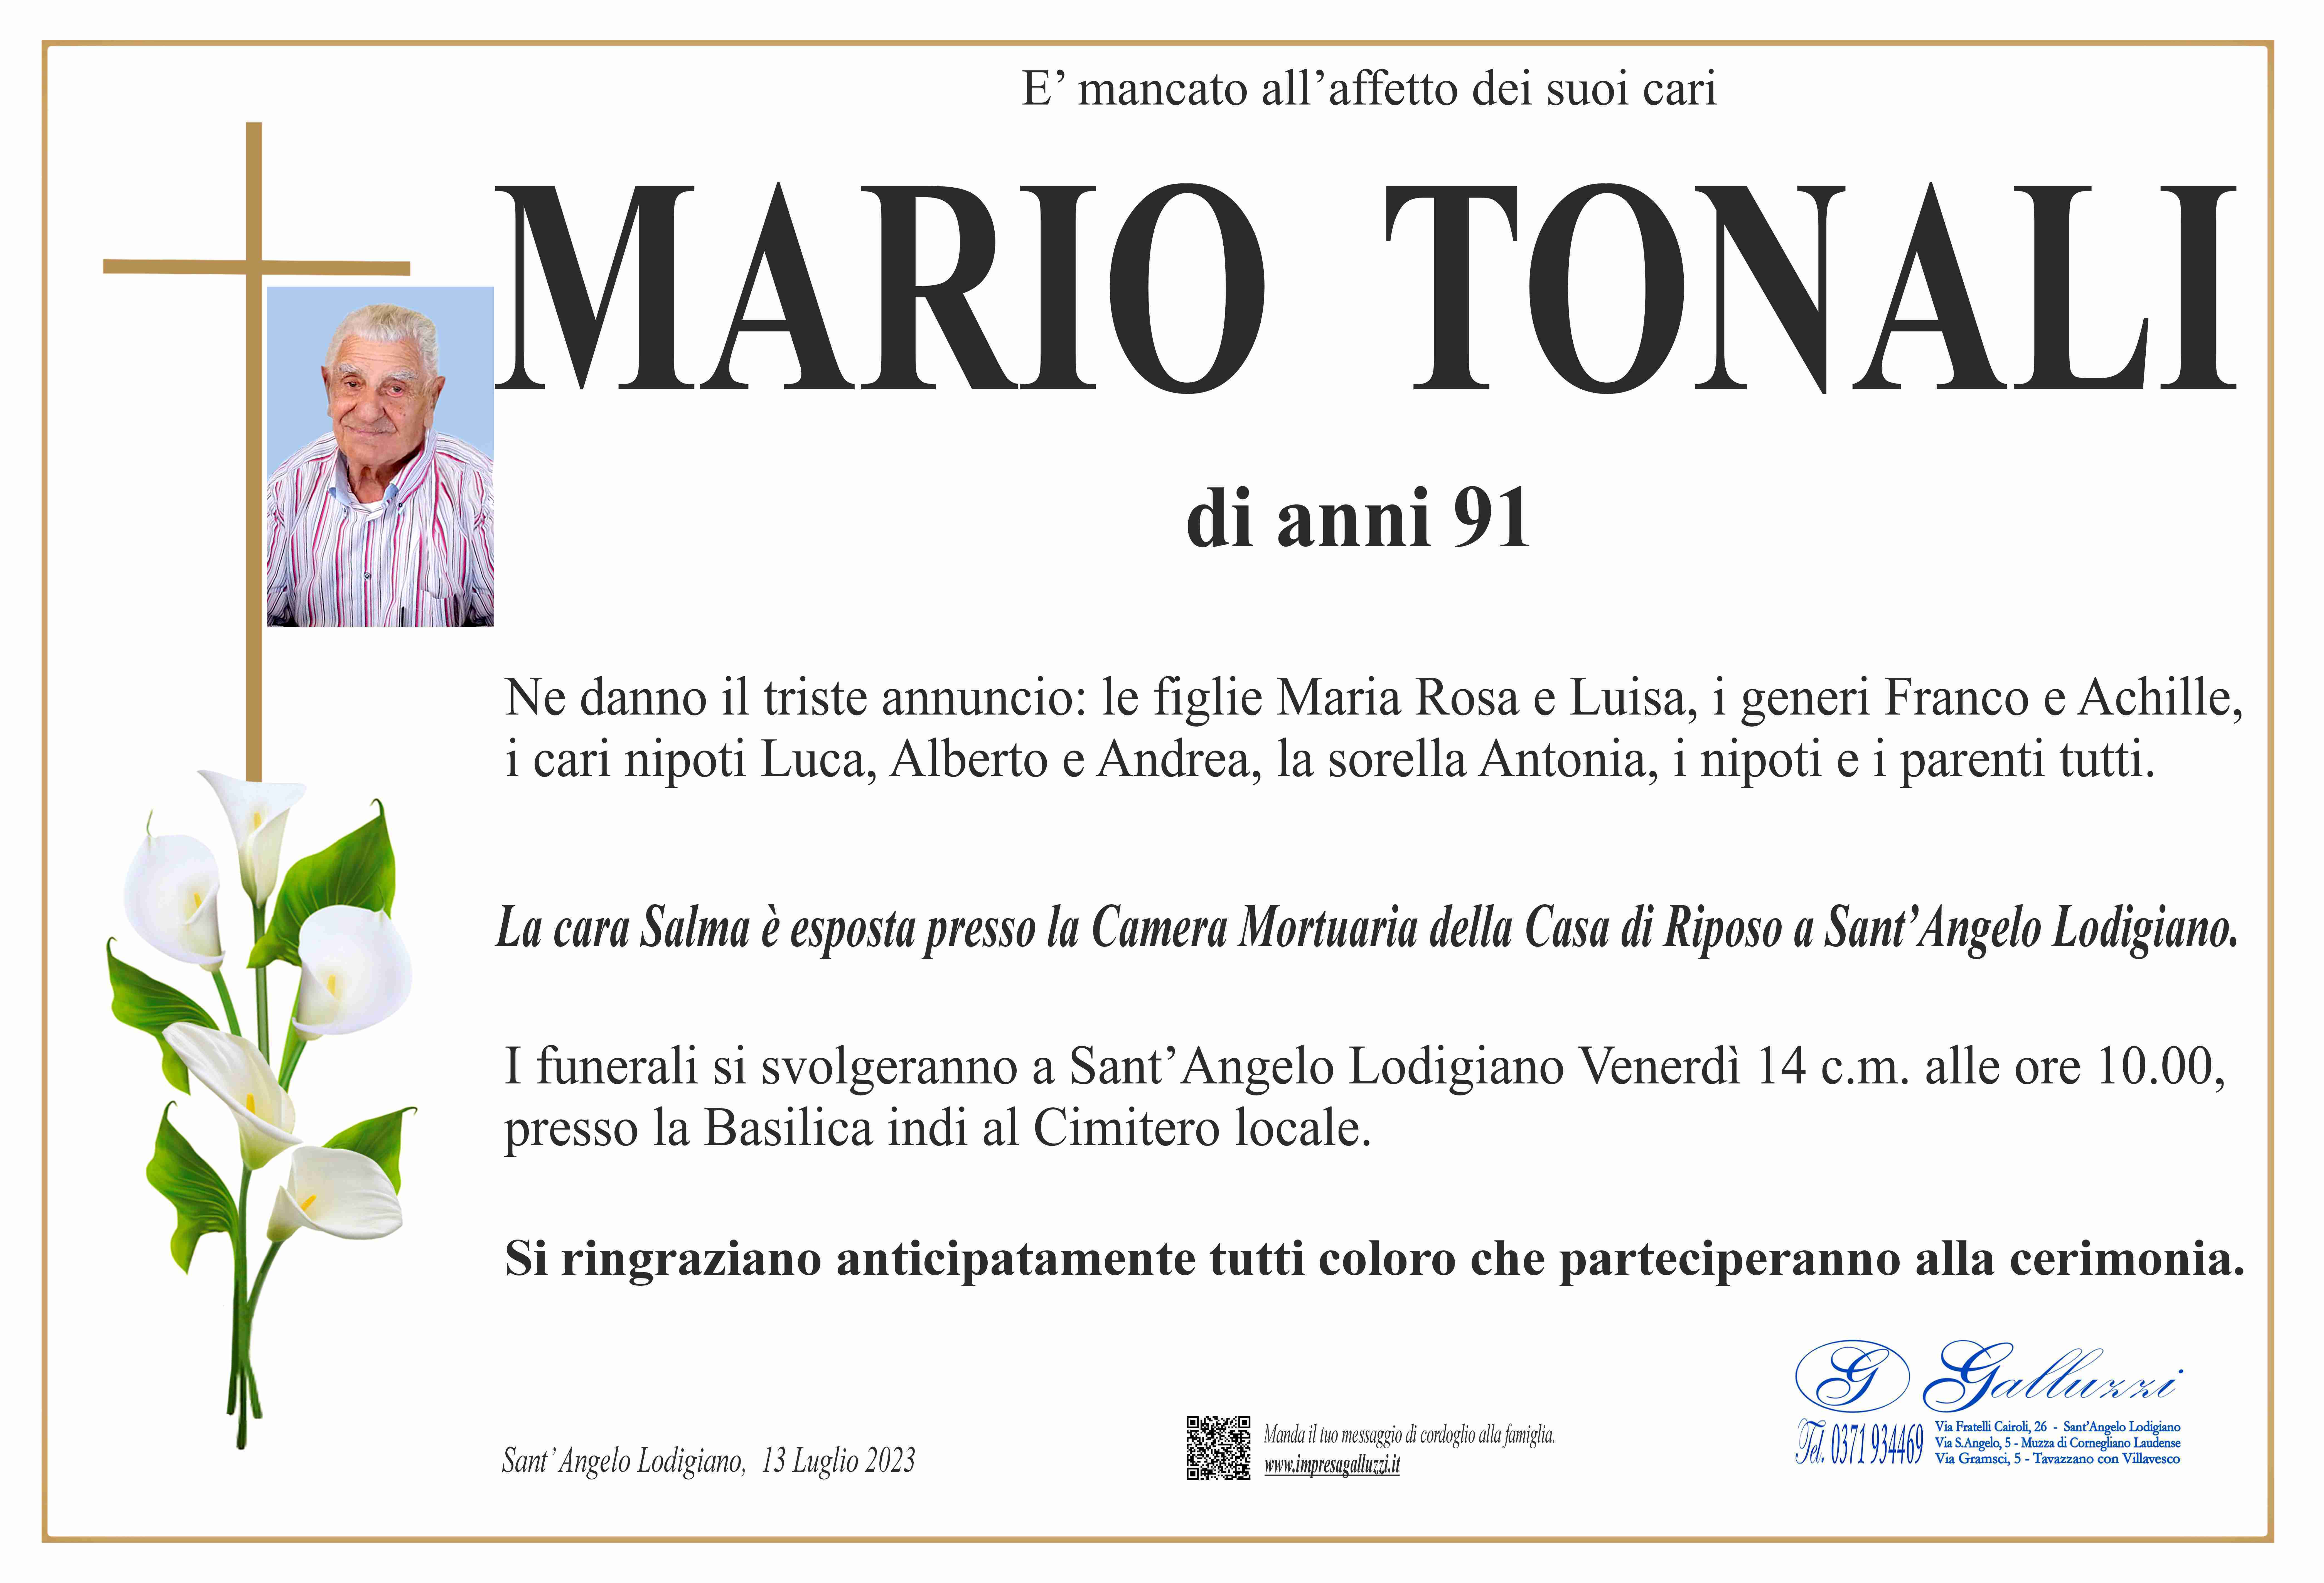 Mario Tonali